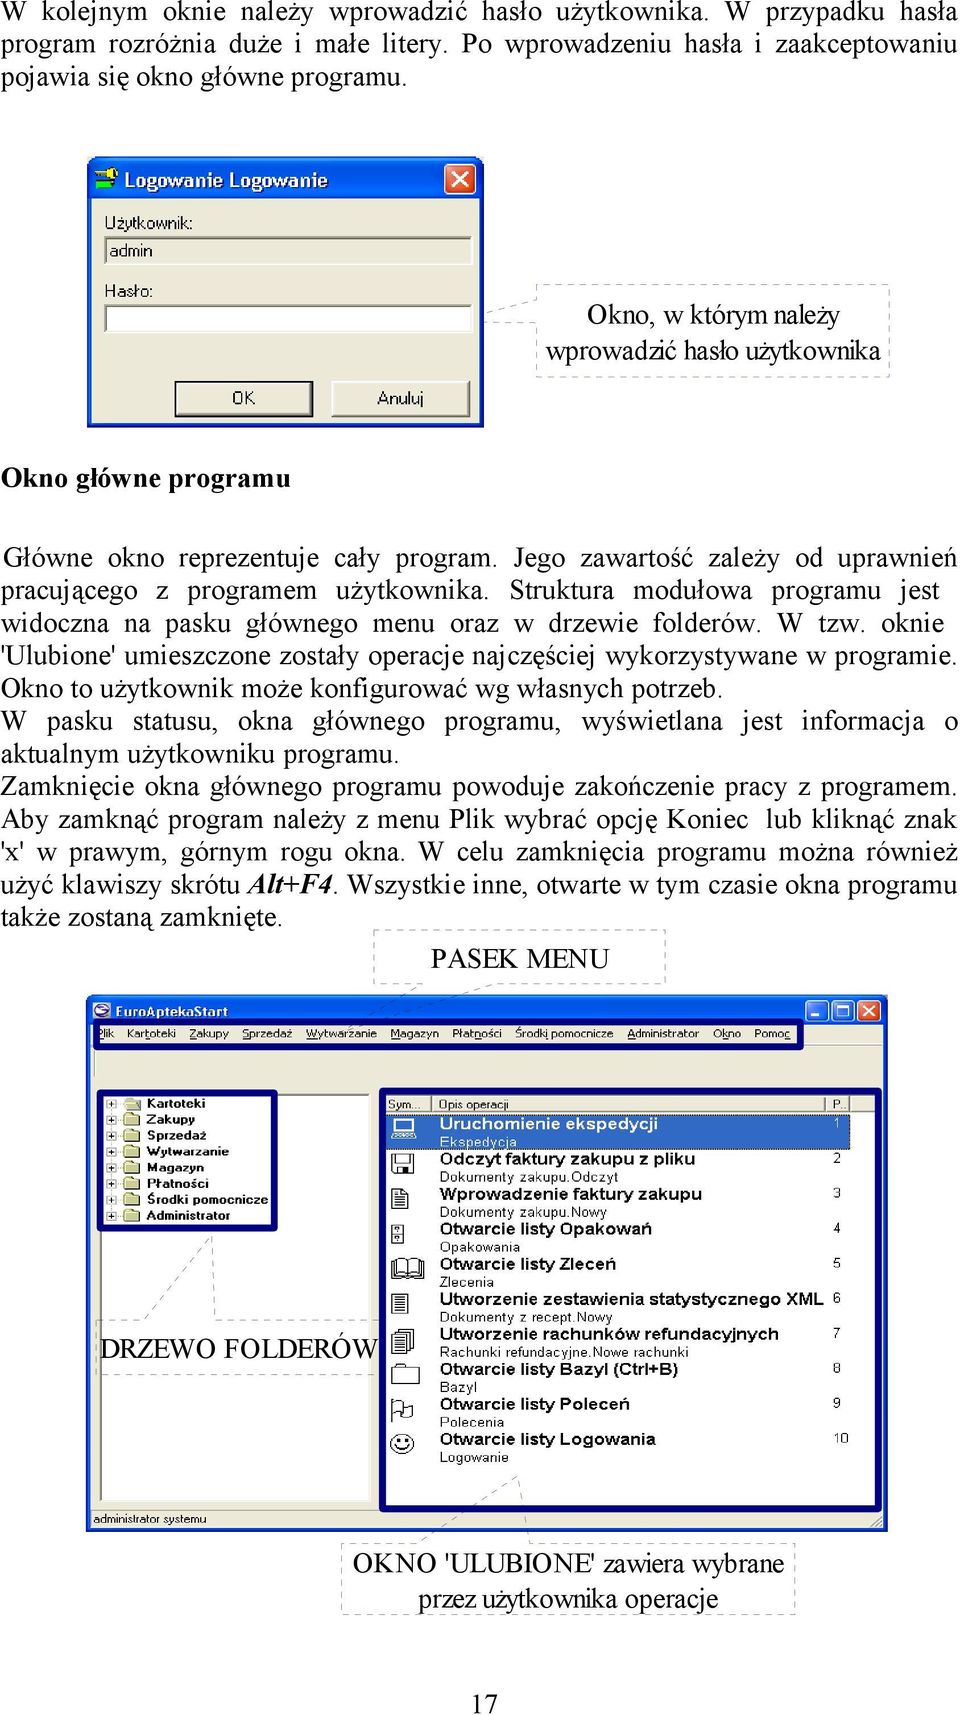 Struktura modułowa programu jest widoczna na pasku głównego menu oraz w drzewie folderów. W tzw. oknie 'Ulubione' umieszczone zostały operacje najczęściej wykorzystywane w programie.